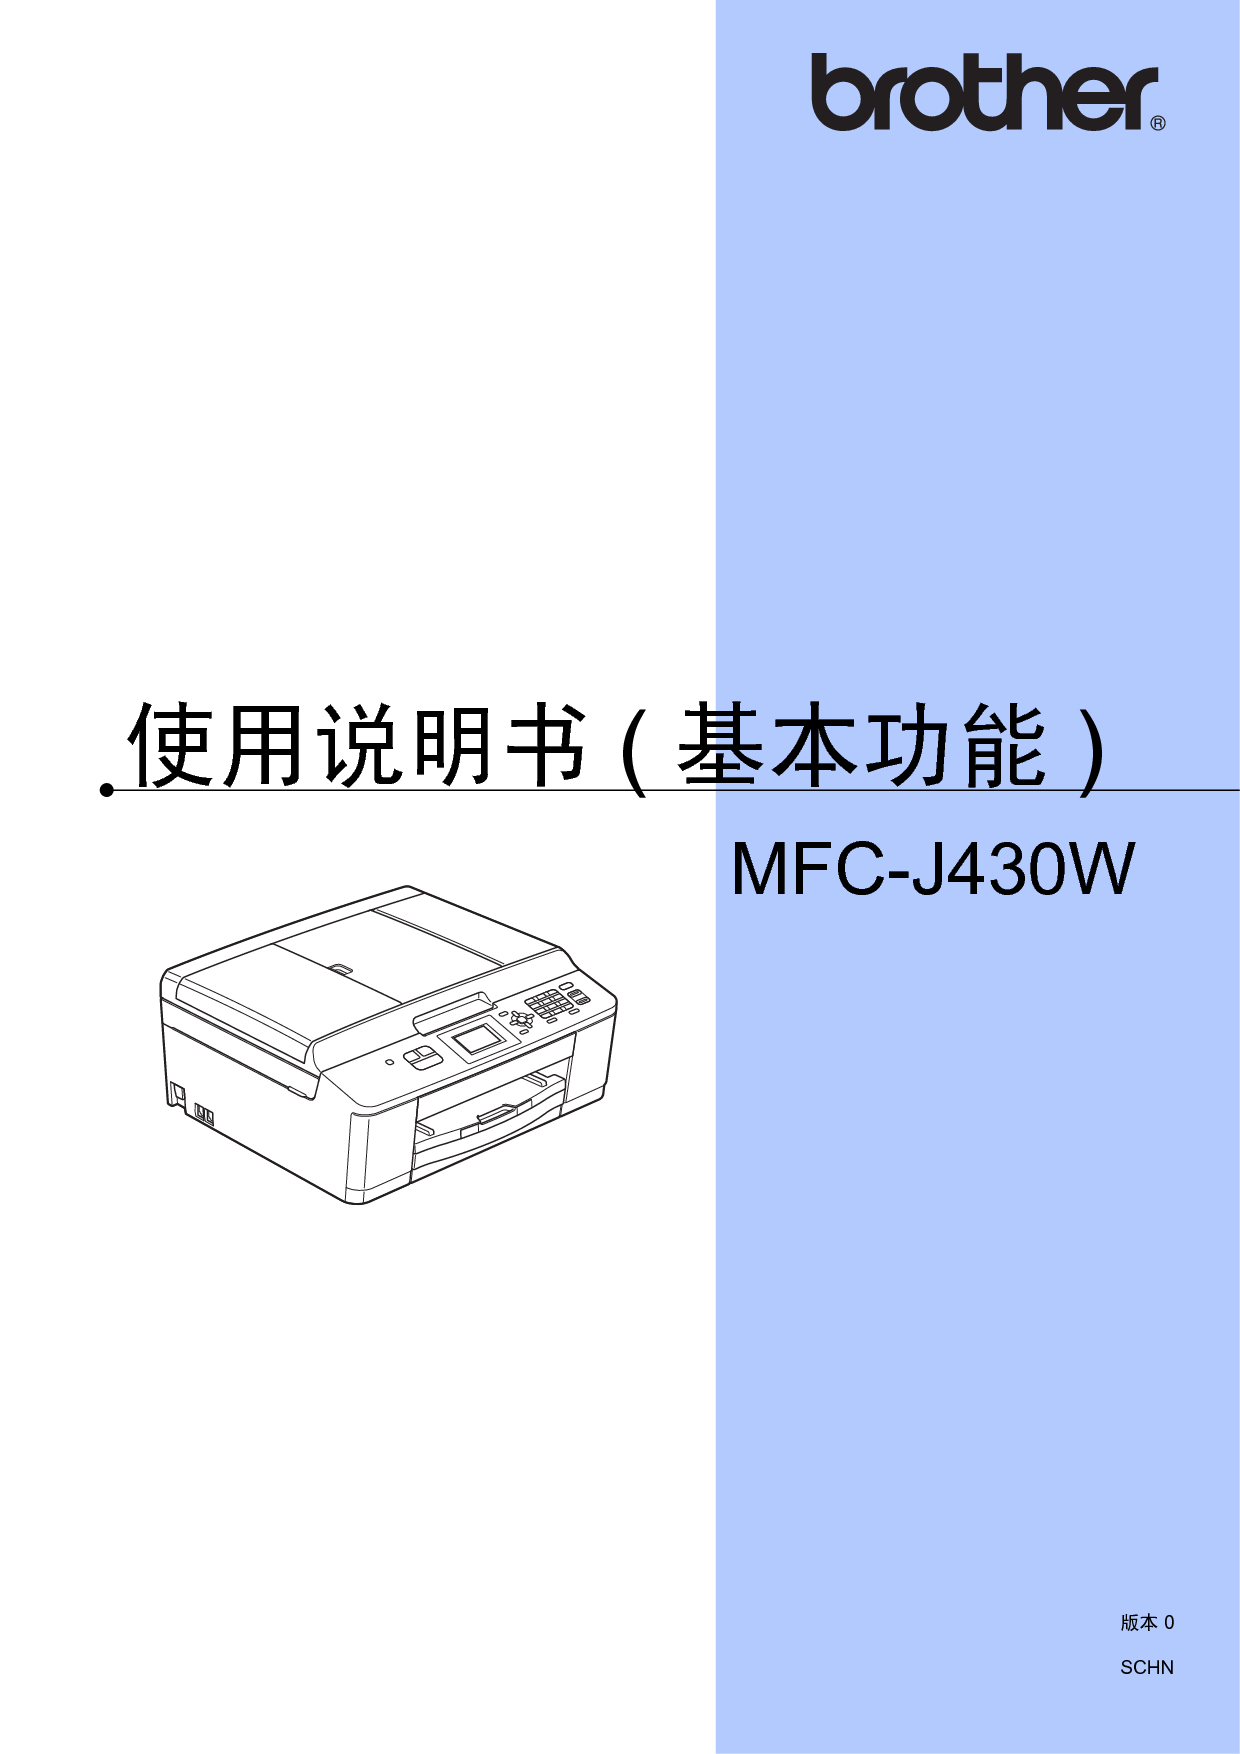 兄弟 Brother MFC-J430W 基本 使用说明书 封面